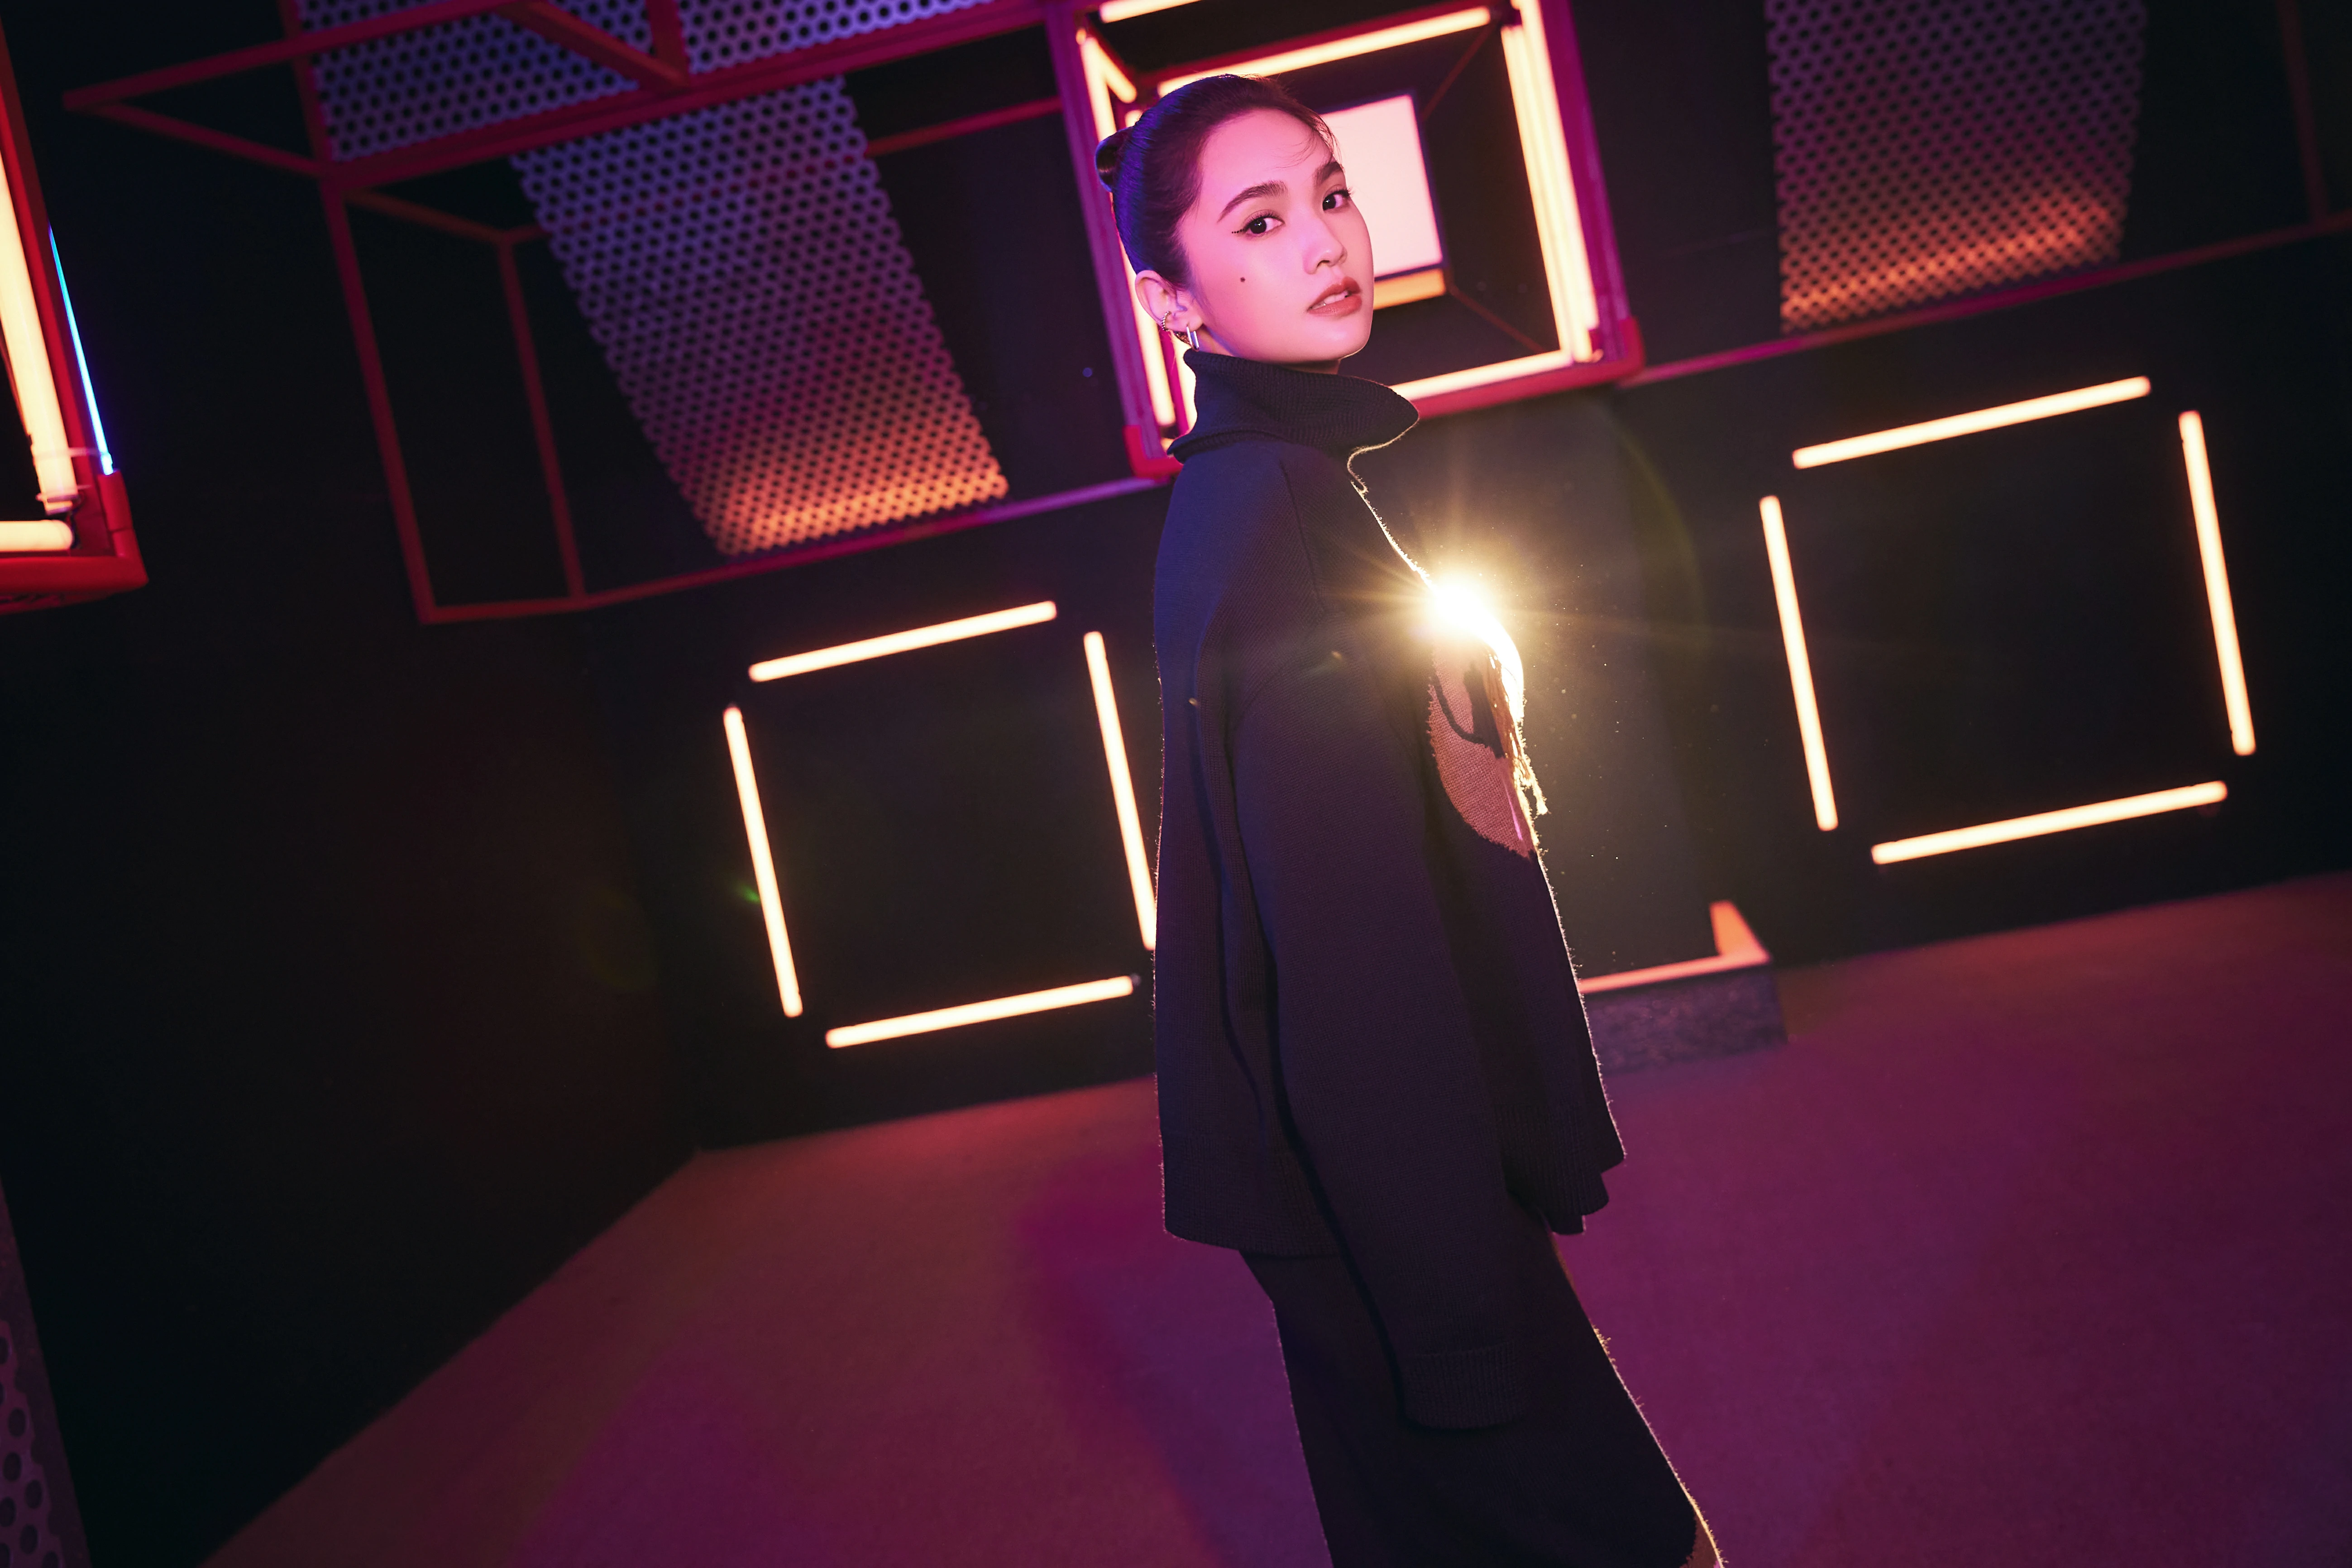 杨丞琳亮相本周《闪光的乐队》 挑染公主切造型带来《天堂》舞台,30